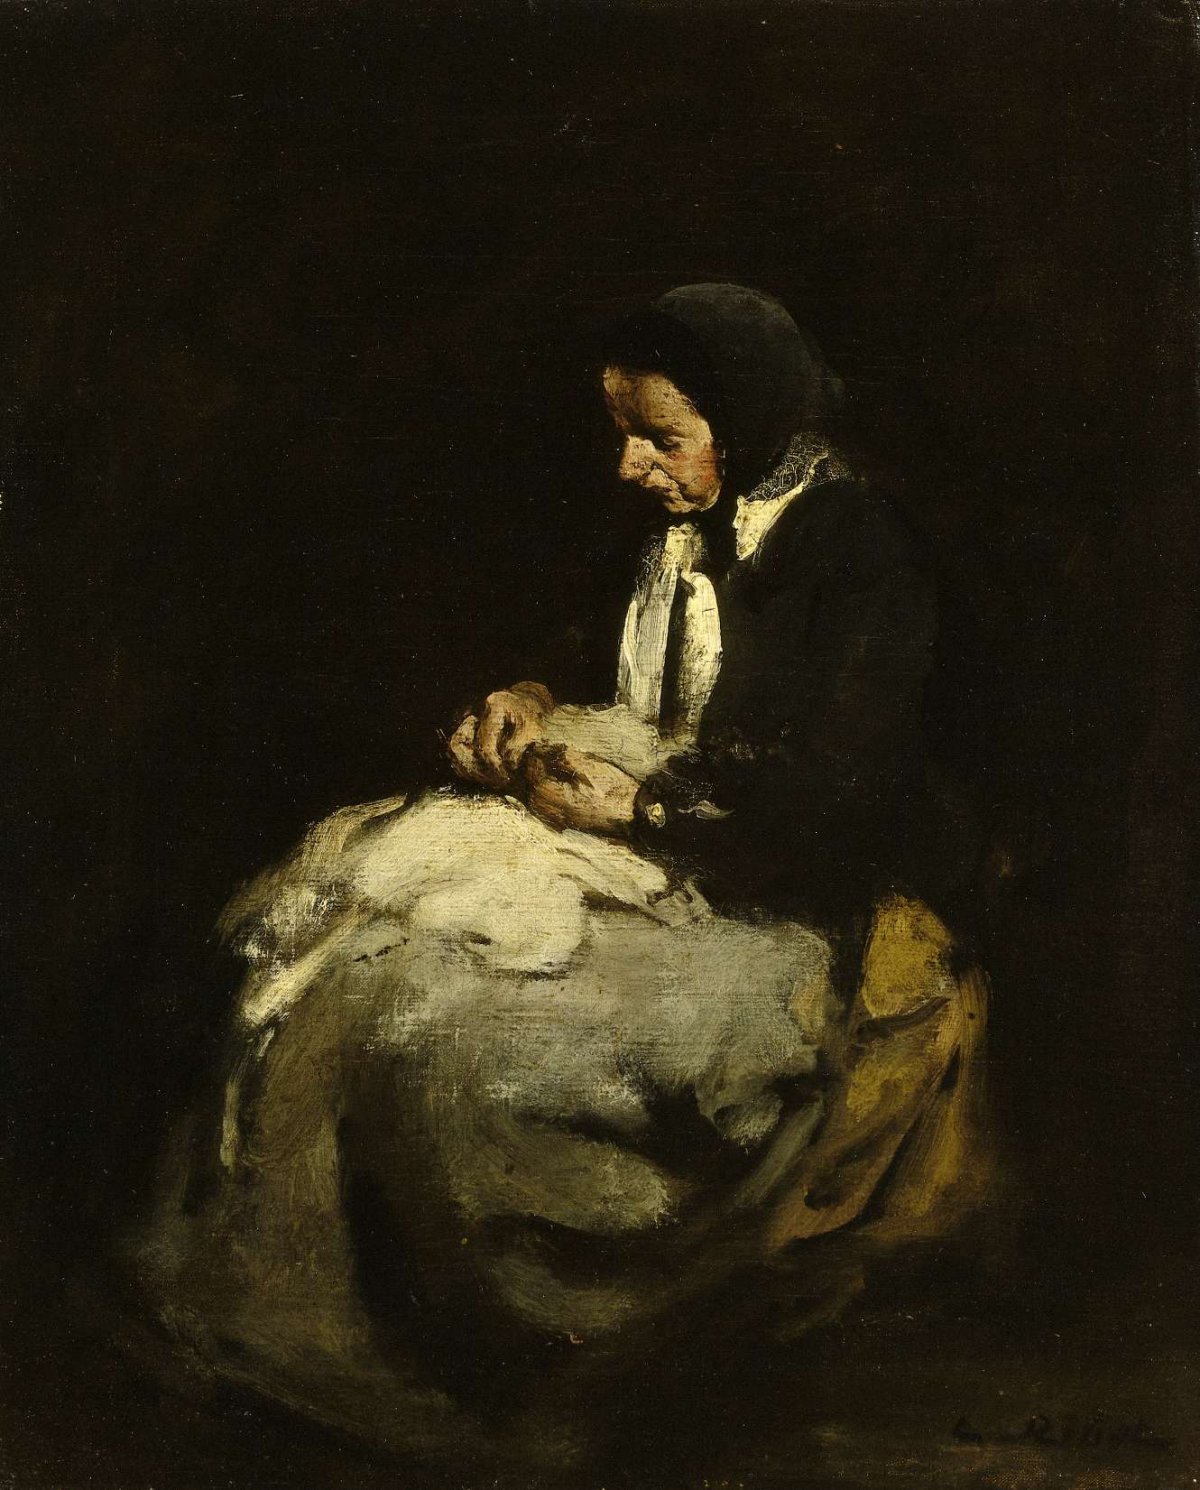 Woman sewing, Théodule Augustin Ribot, 1850 - 1891